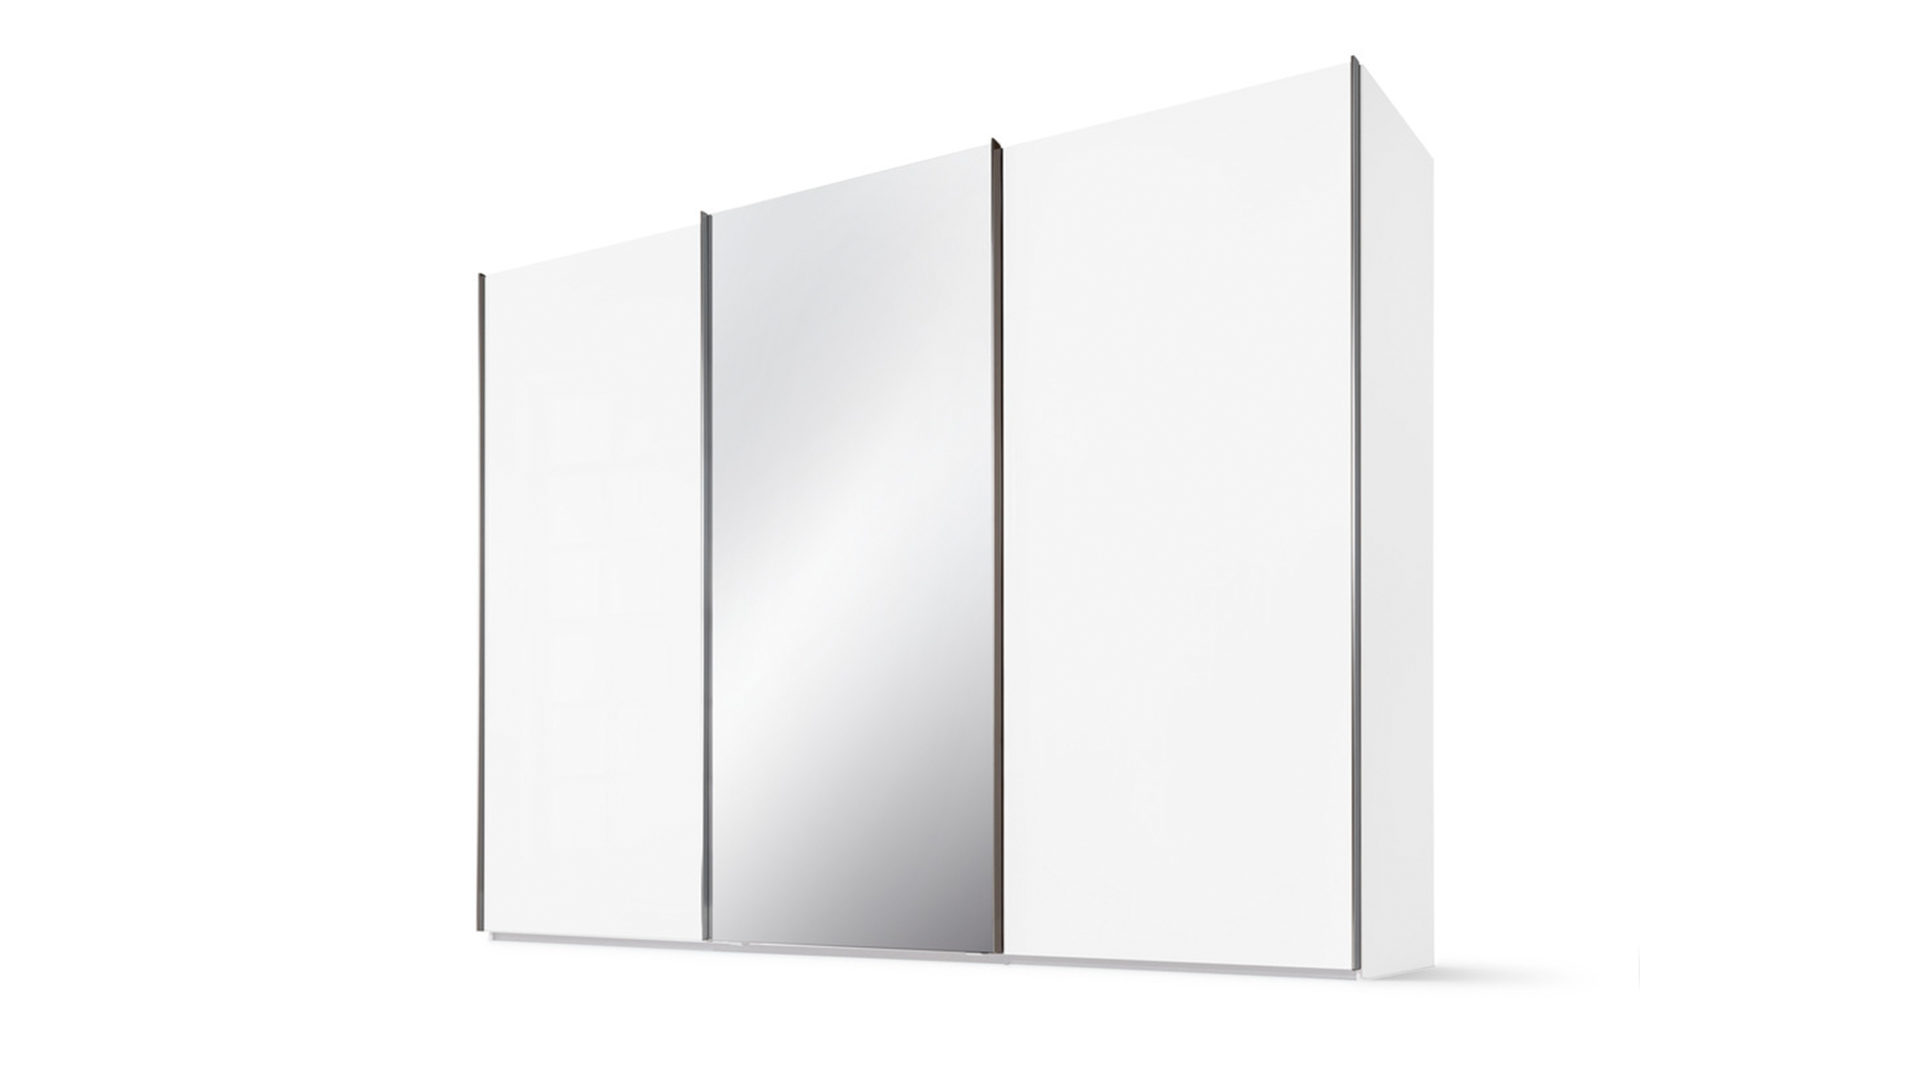 Kleiderschrank Nolte möbel | germersheim aus Glas in Weiß Schwebetürenschrank Marcato 2.1 polar- & kristallweiße Oberflächen – drei Türen